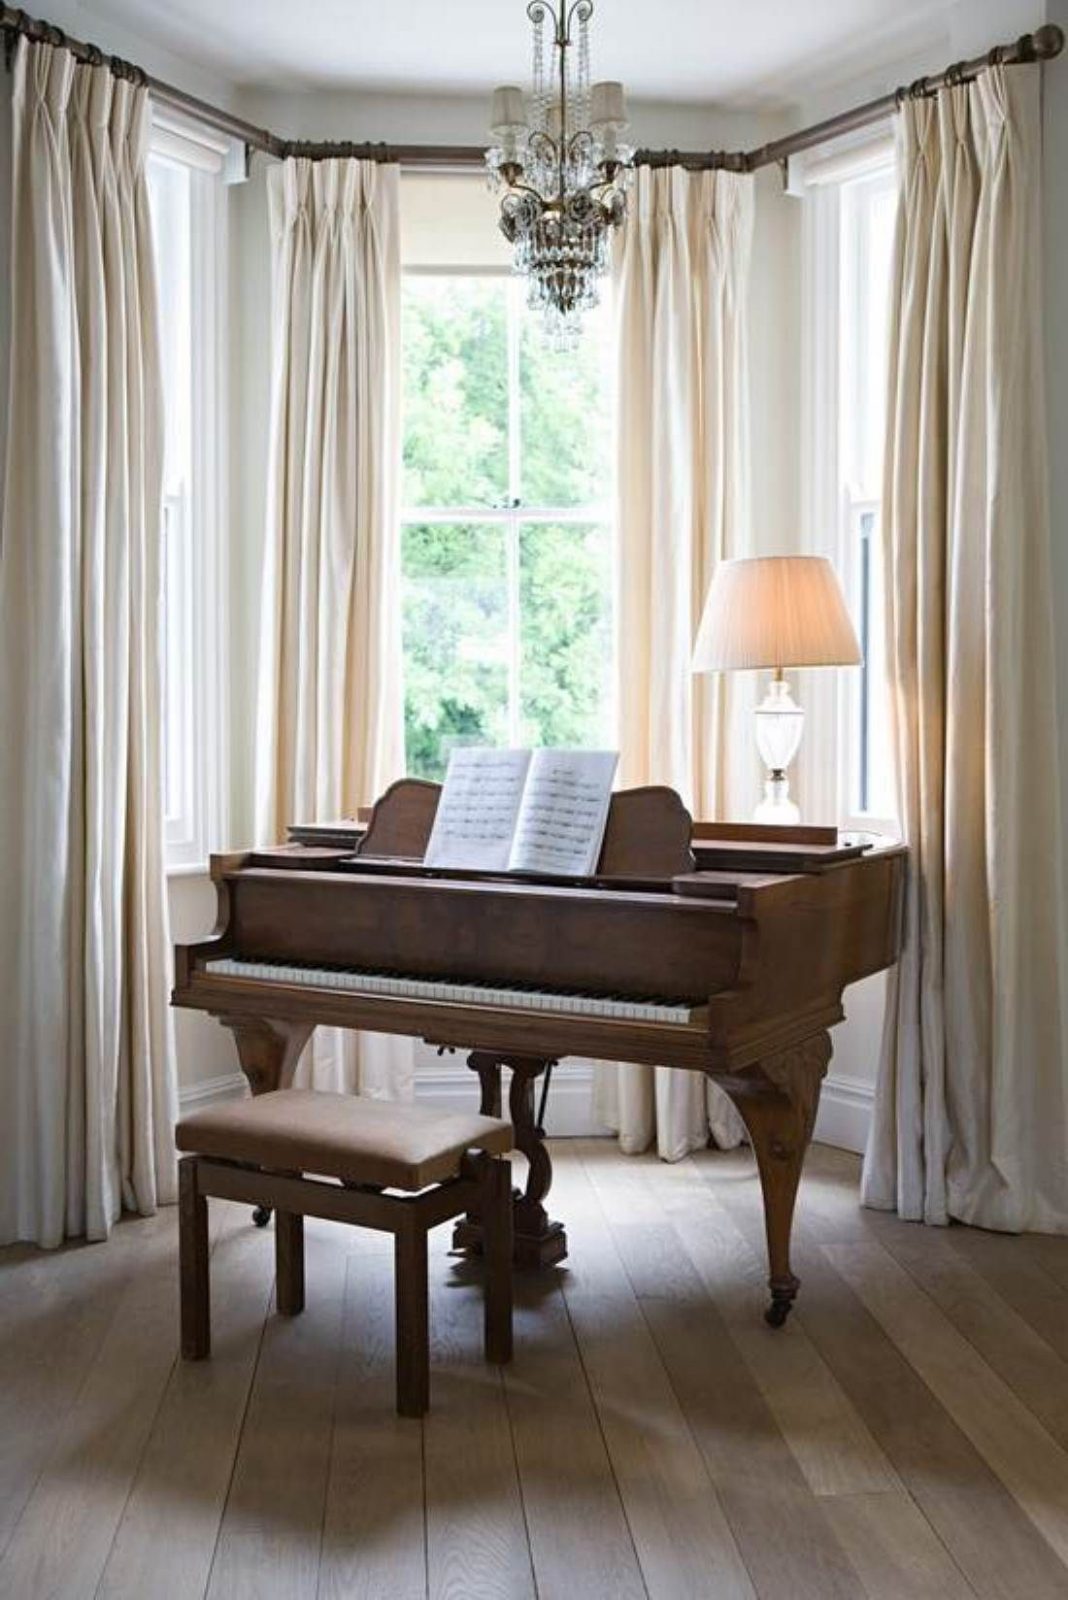 ย้ายเปียโน บางเขน ราคาถูกที่สุด  ย้ายเปียโนราคาถูก เริ่มต้นที่ 2000 บาท โทรเลย 083010 5645